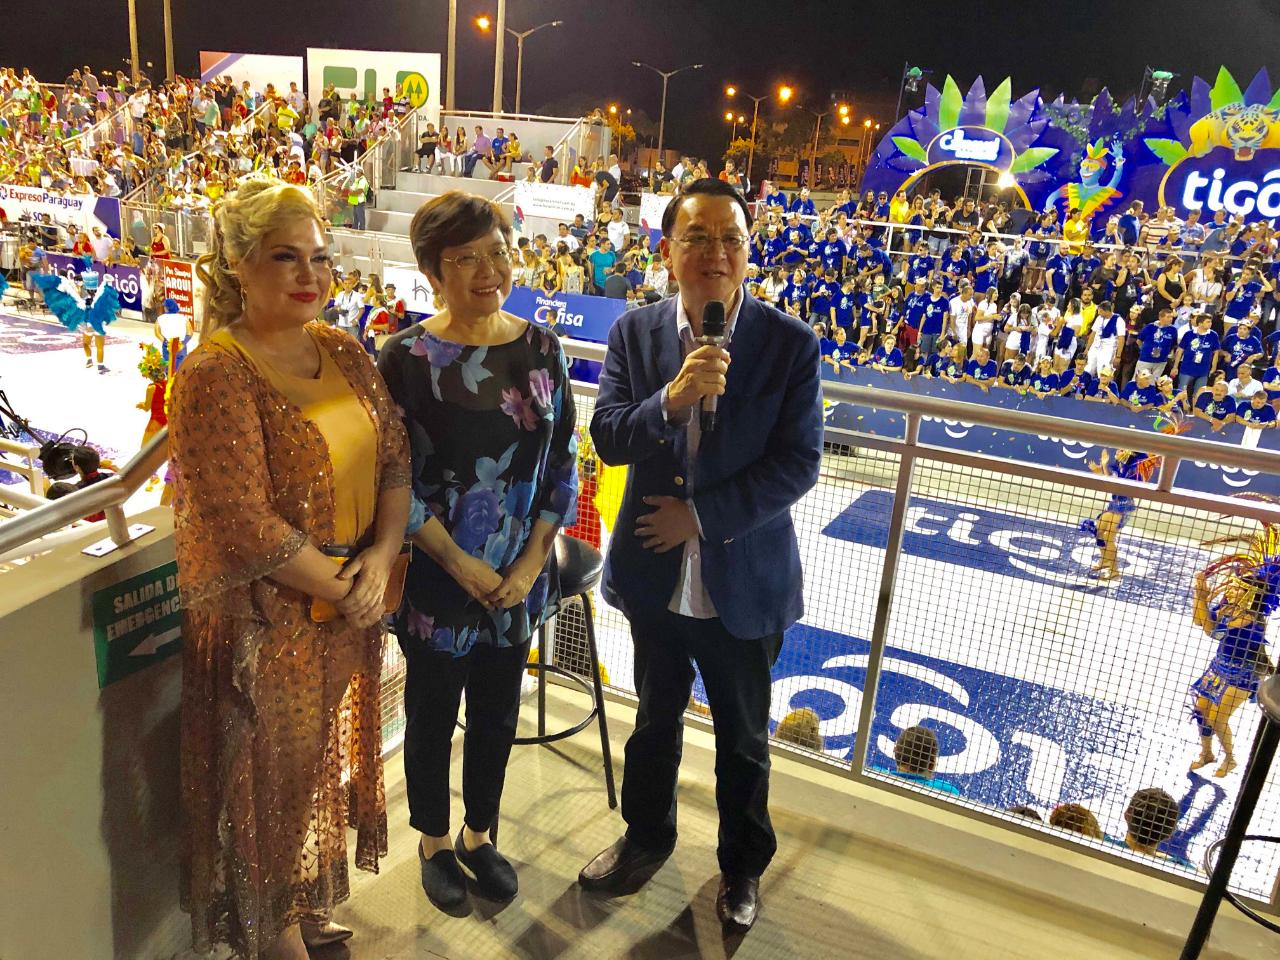 圖為中華民國駐巴拉圭周麟大使夫婦應邀參加嘉年華遊行晚會(Carnaval Encarnaceno)，與省長夫人Corolina共同接受媒體採訪。
